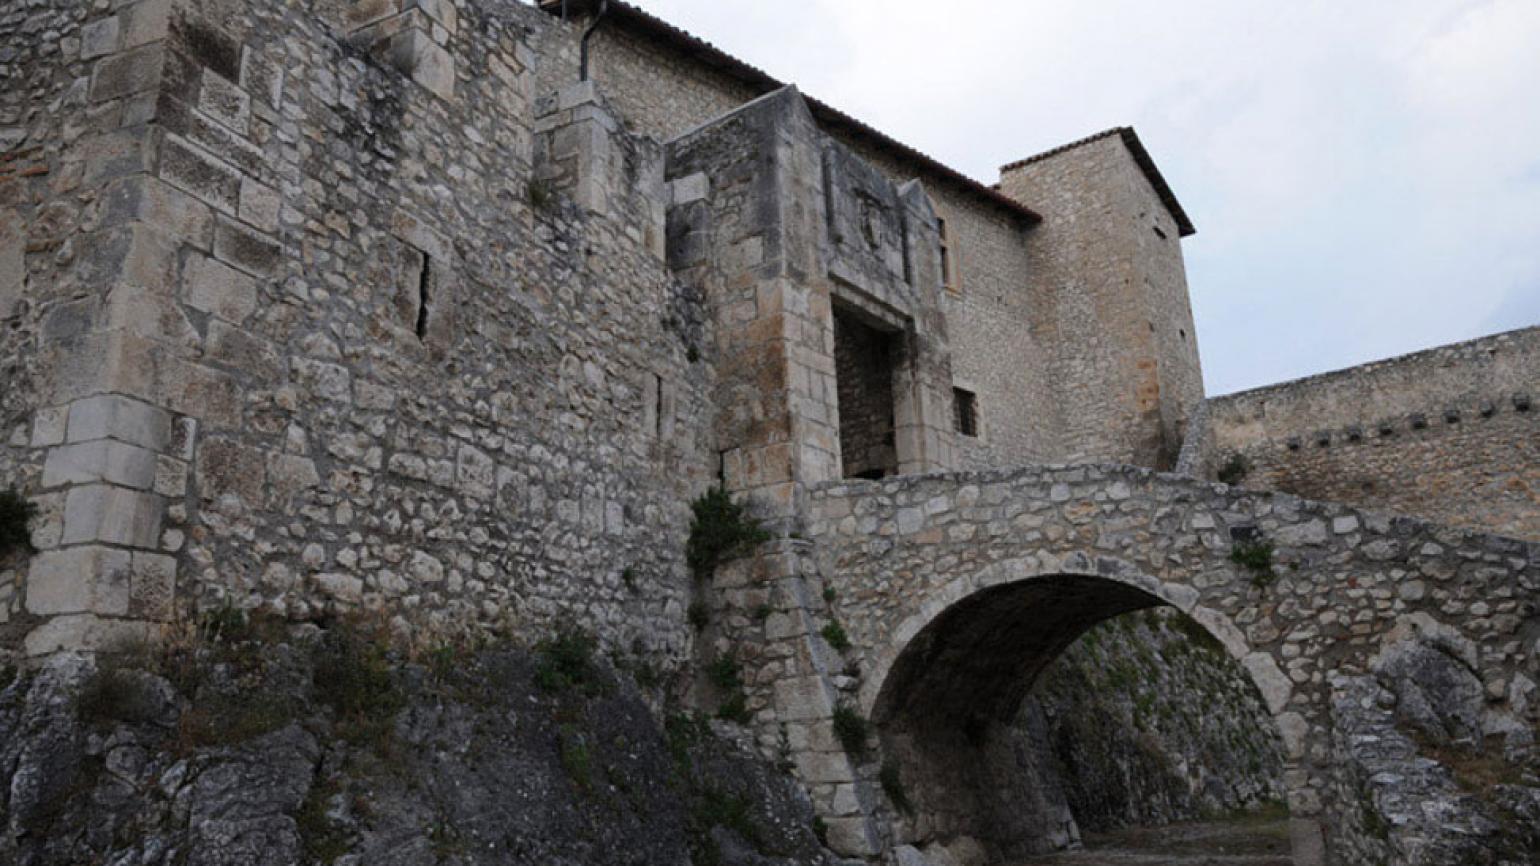 Capestrano (Aq), il Castello Piccolomini, veduta dell’ingresso al cortile